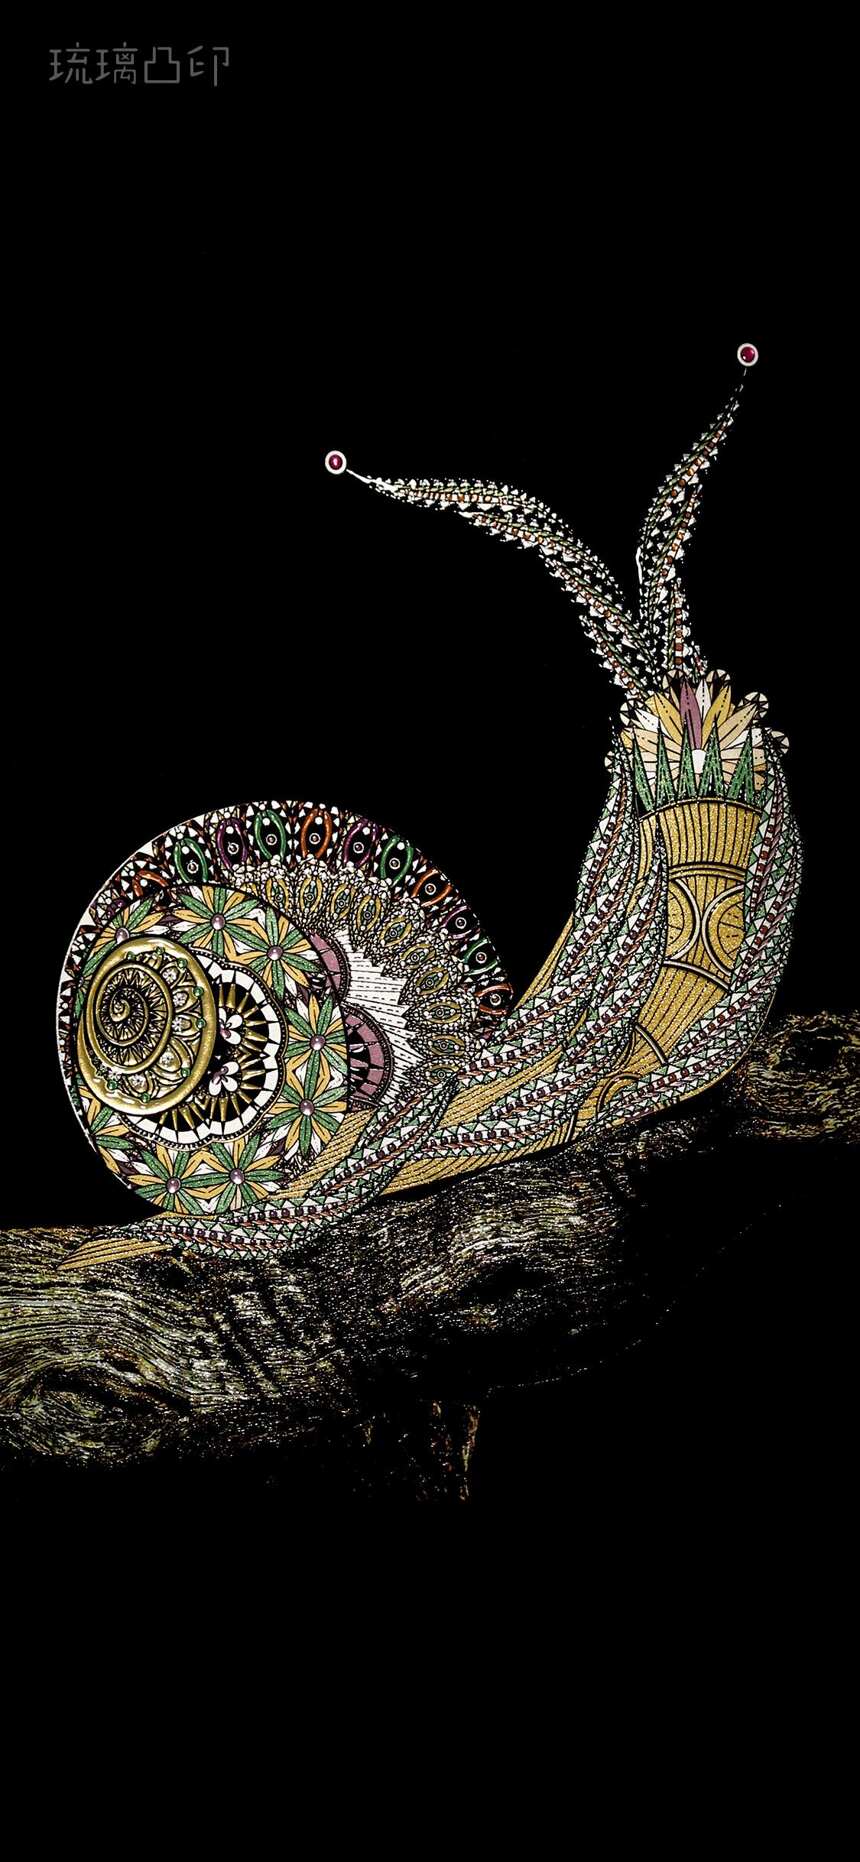 蜗牛骑士的美态，高清苹果手机 iphoneX 壁纸